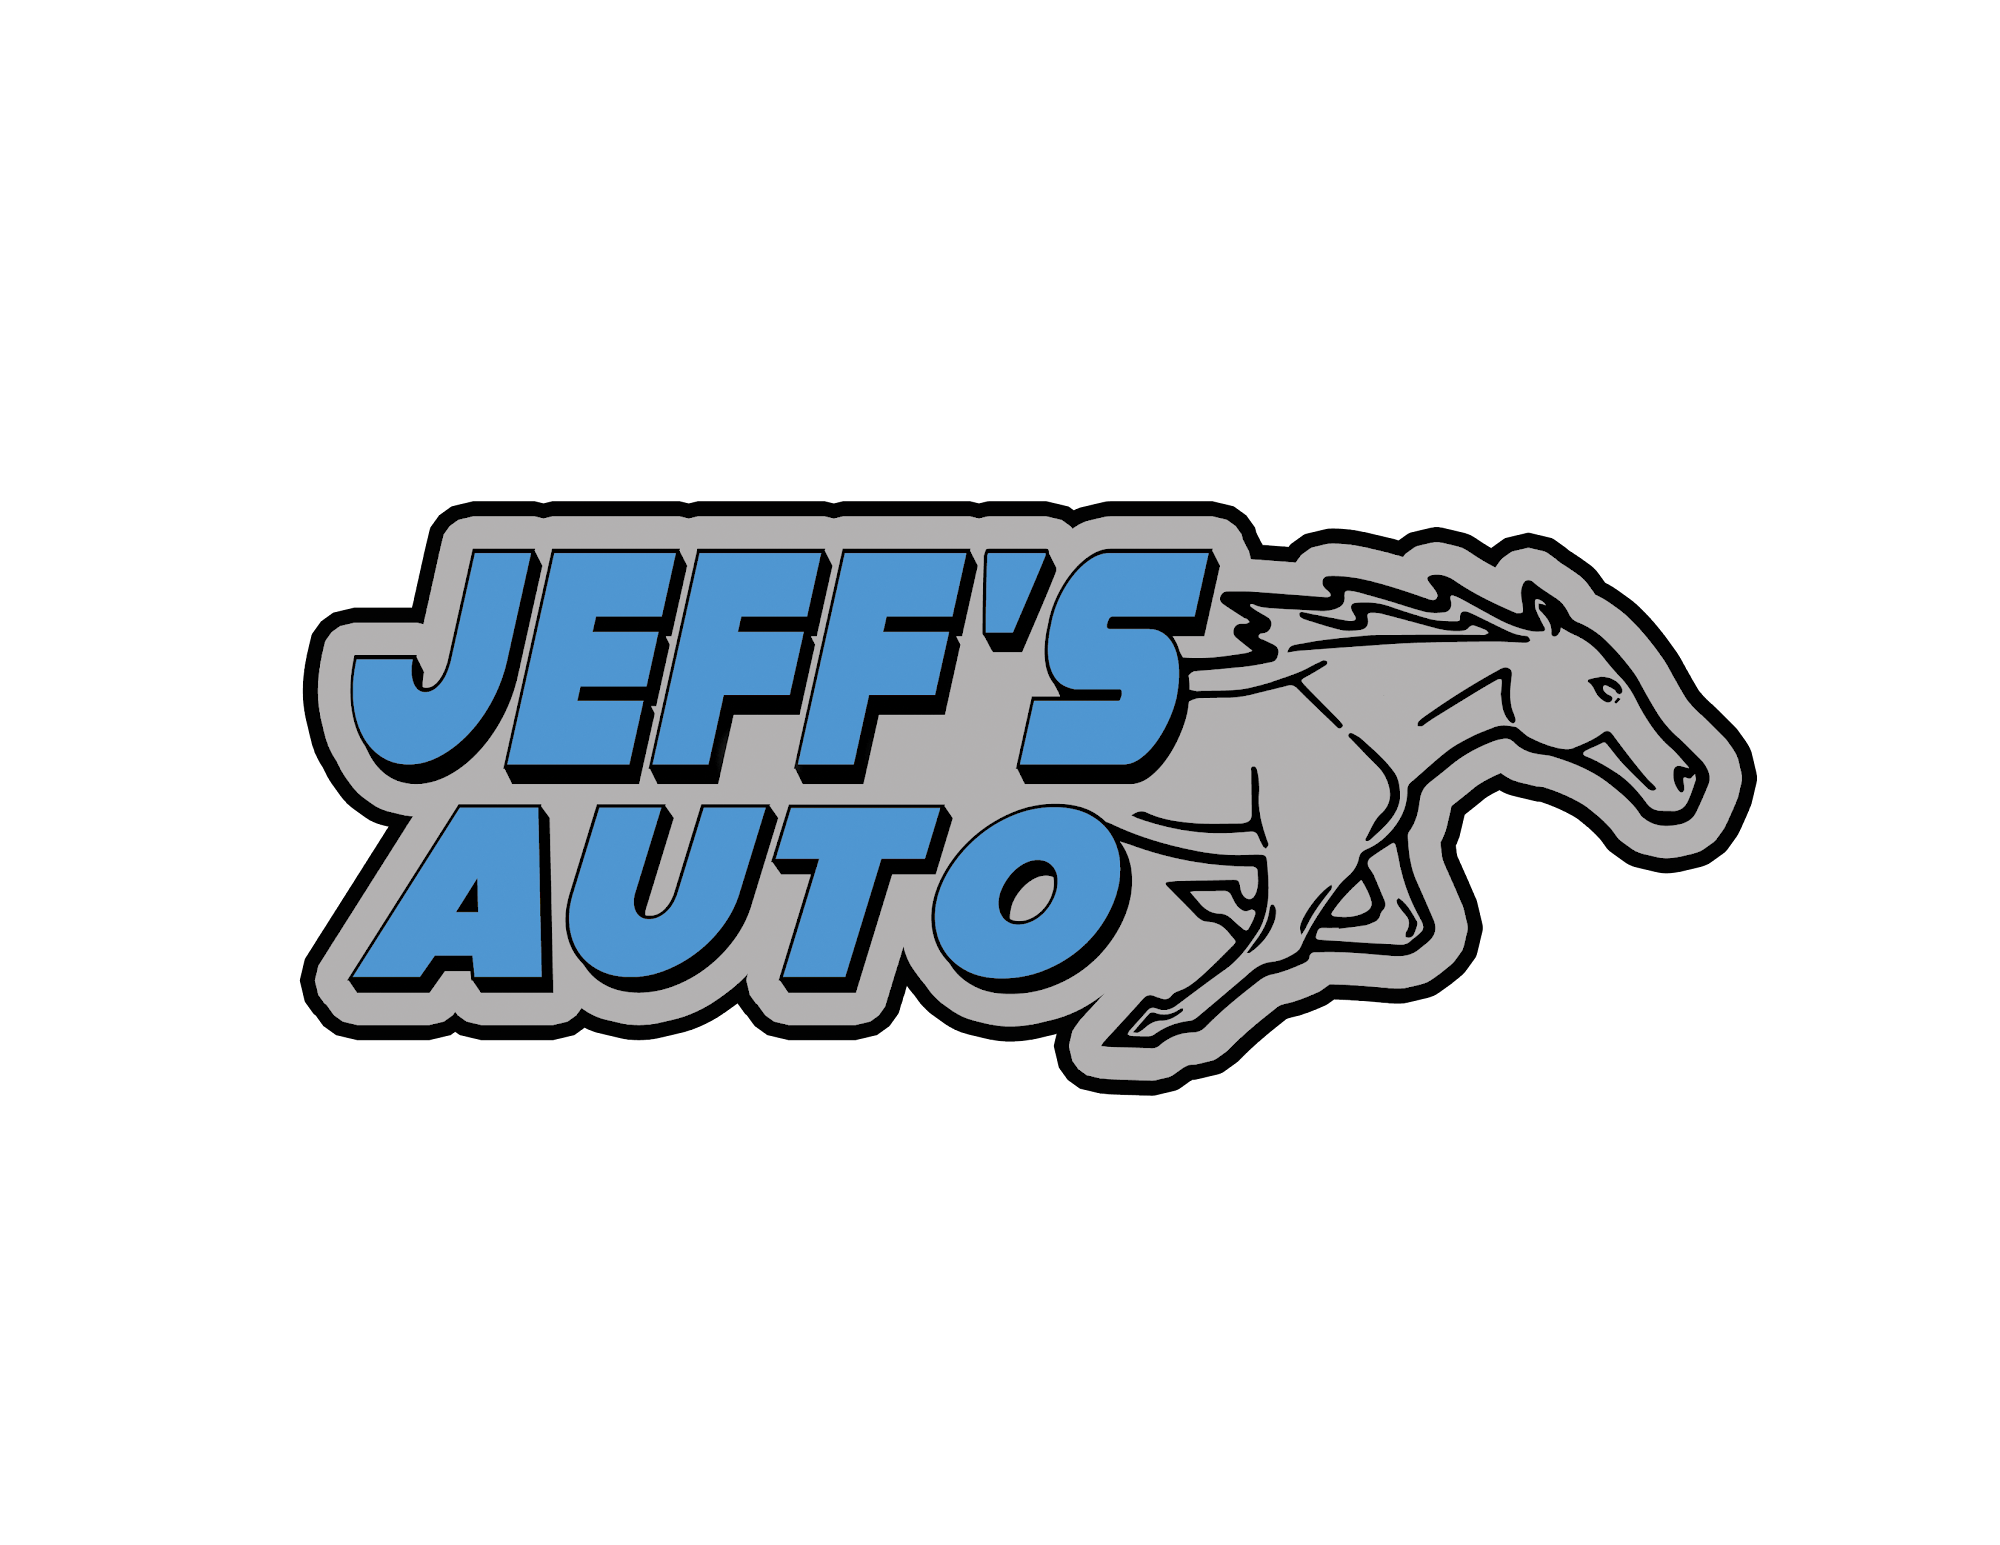 Jeff's Auto